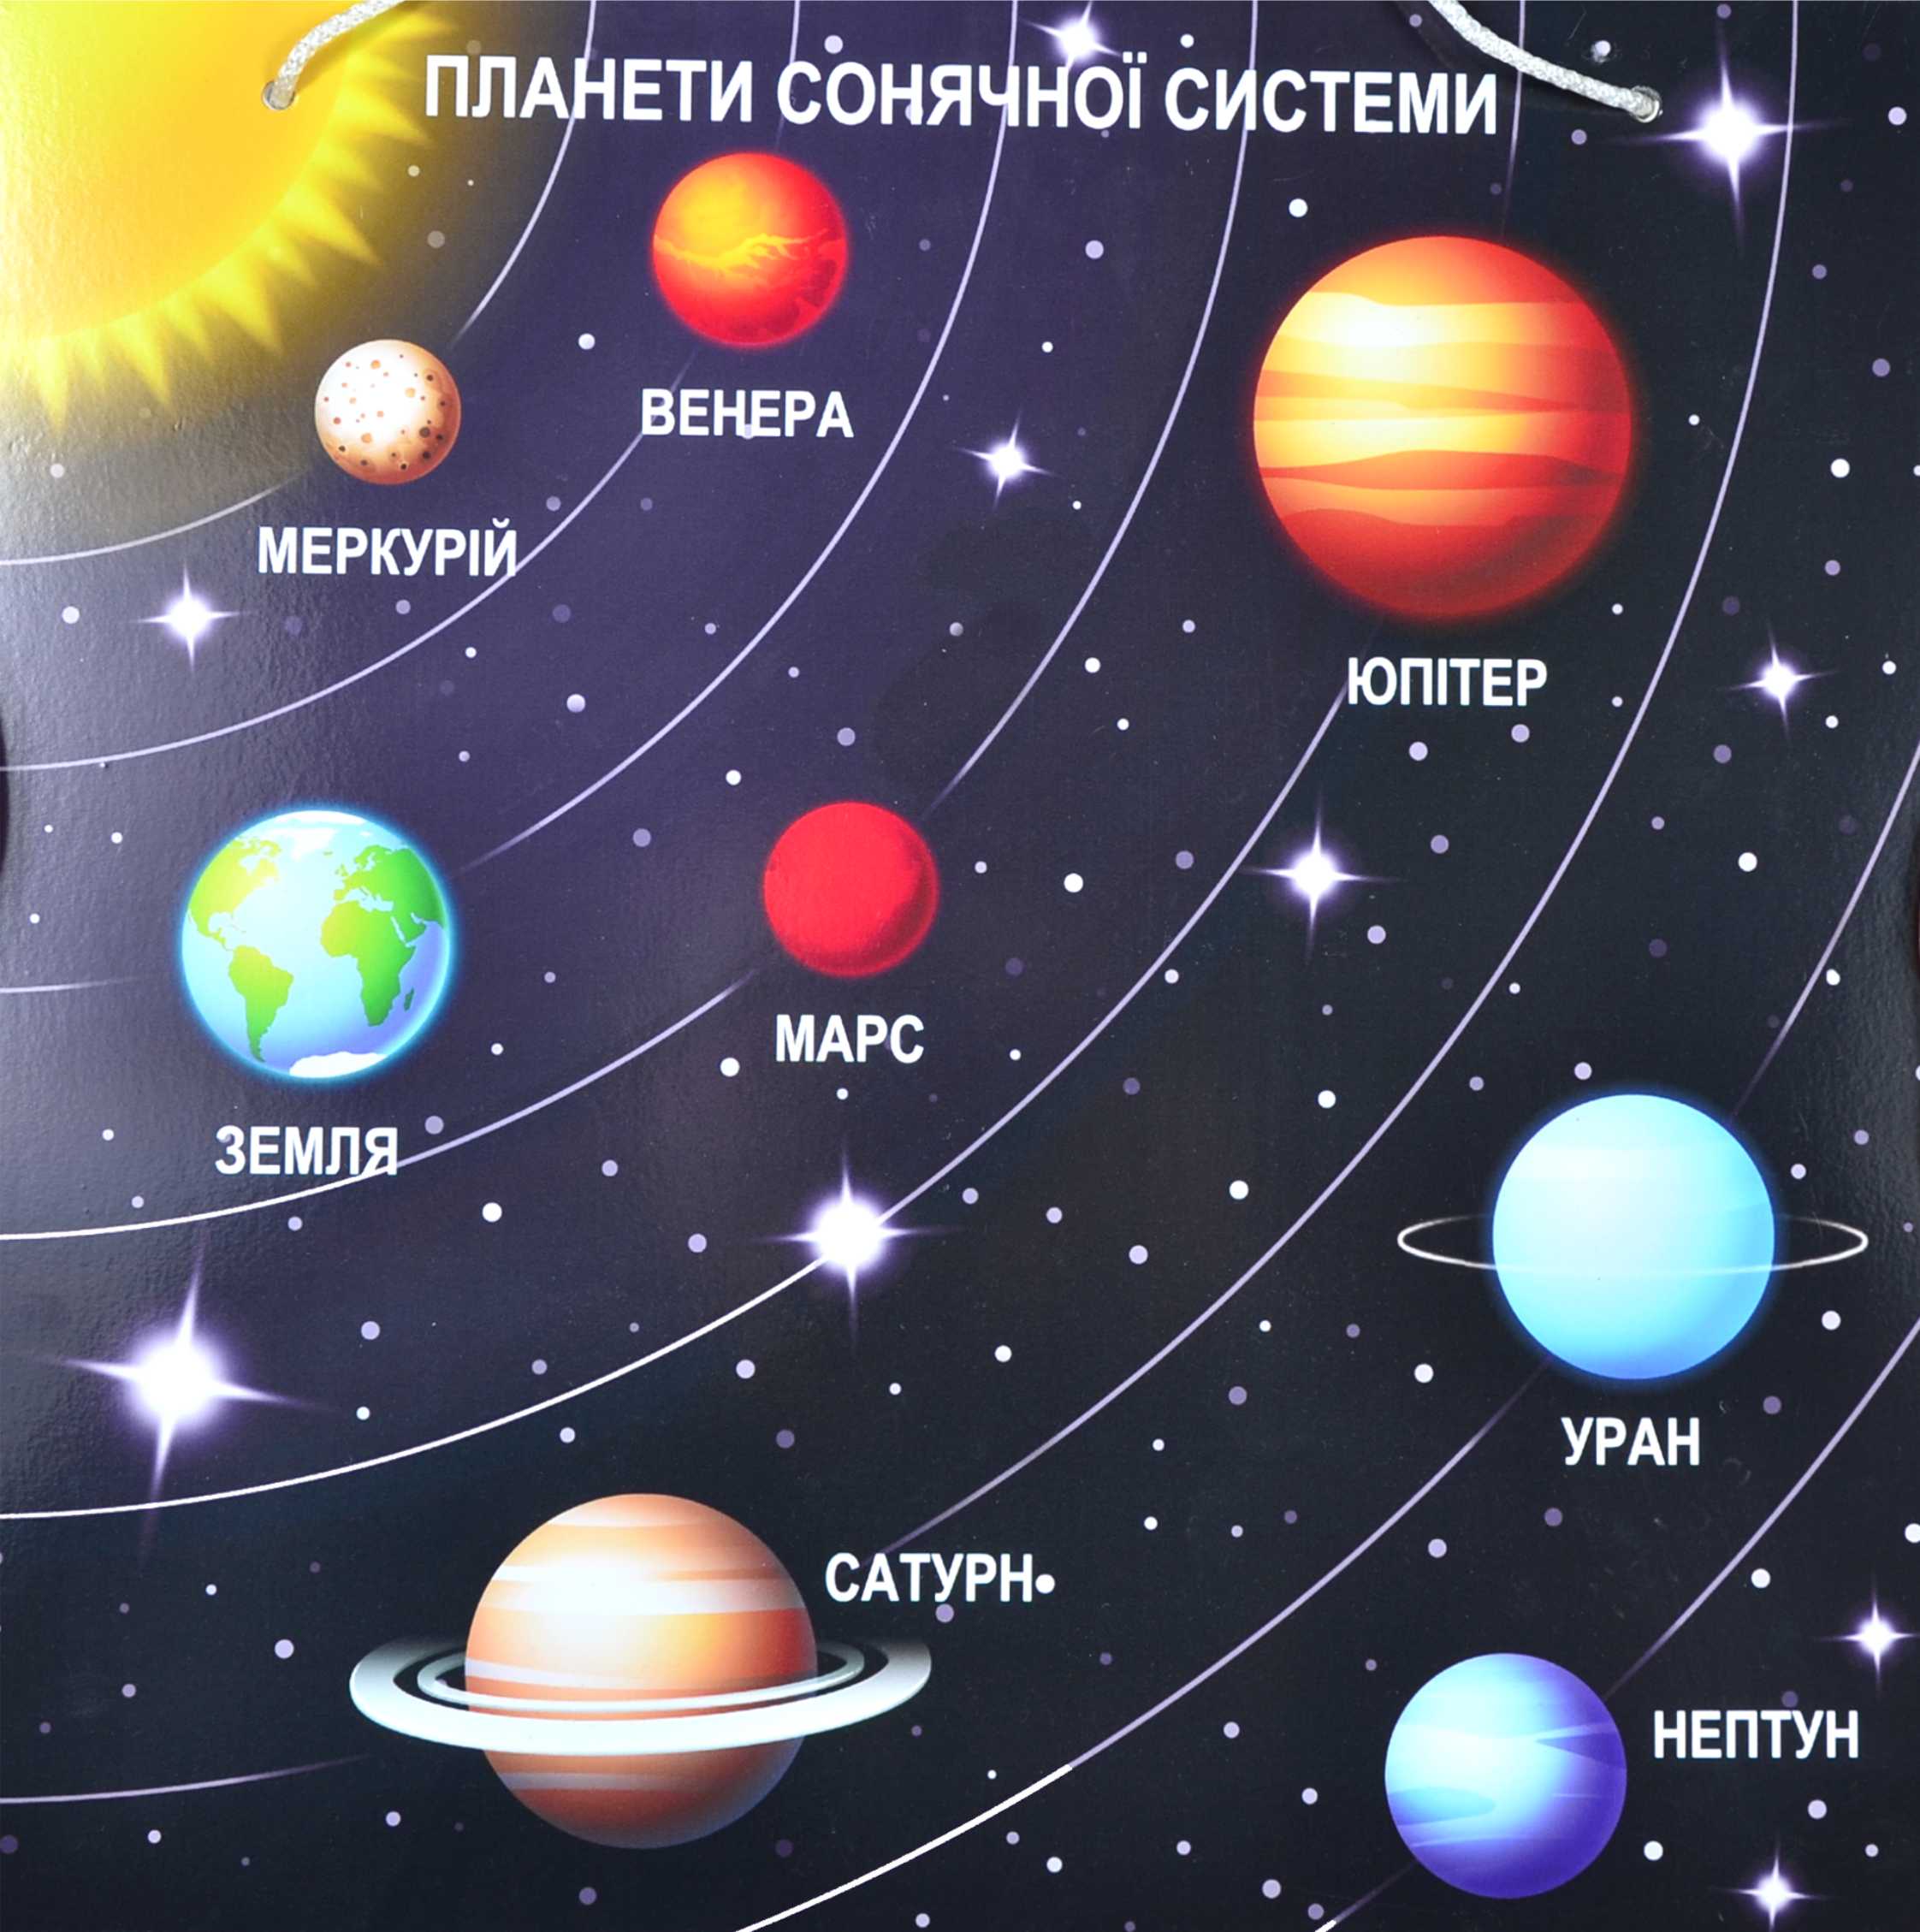 Планеты солнечной системы для дошкольников. Солнечная система расположение плане. Солнечная система с названиями планет по порядку от солнца. Планеты солнечной системы по порядку от солнца с названиями для детей. Расположение планет солнечной системы.